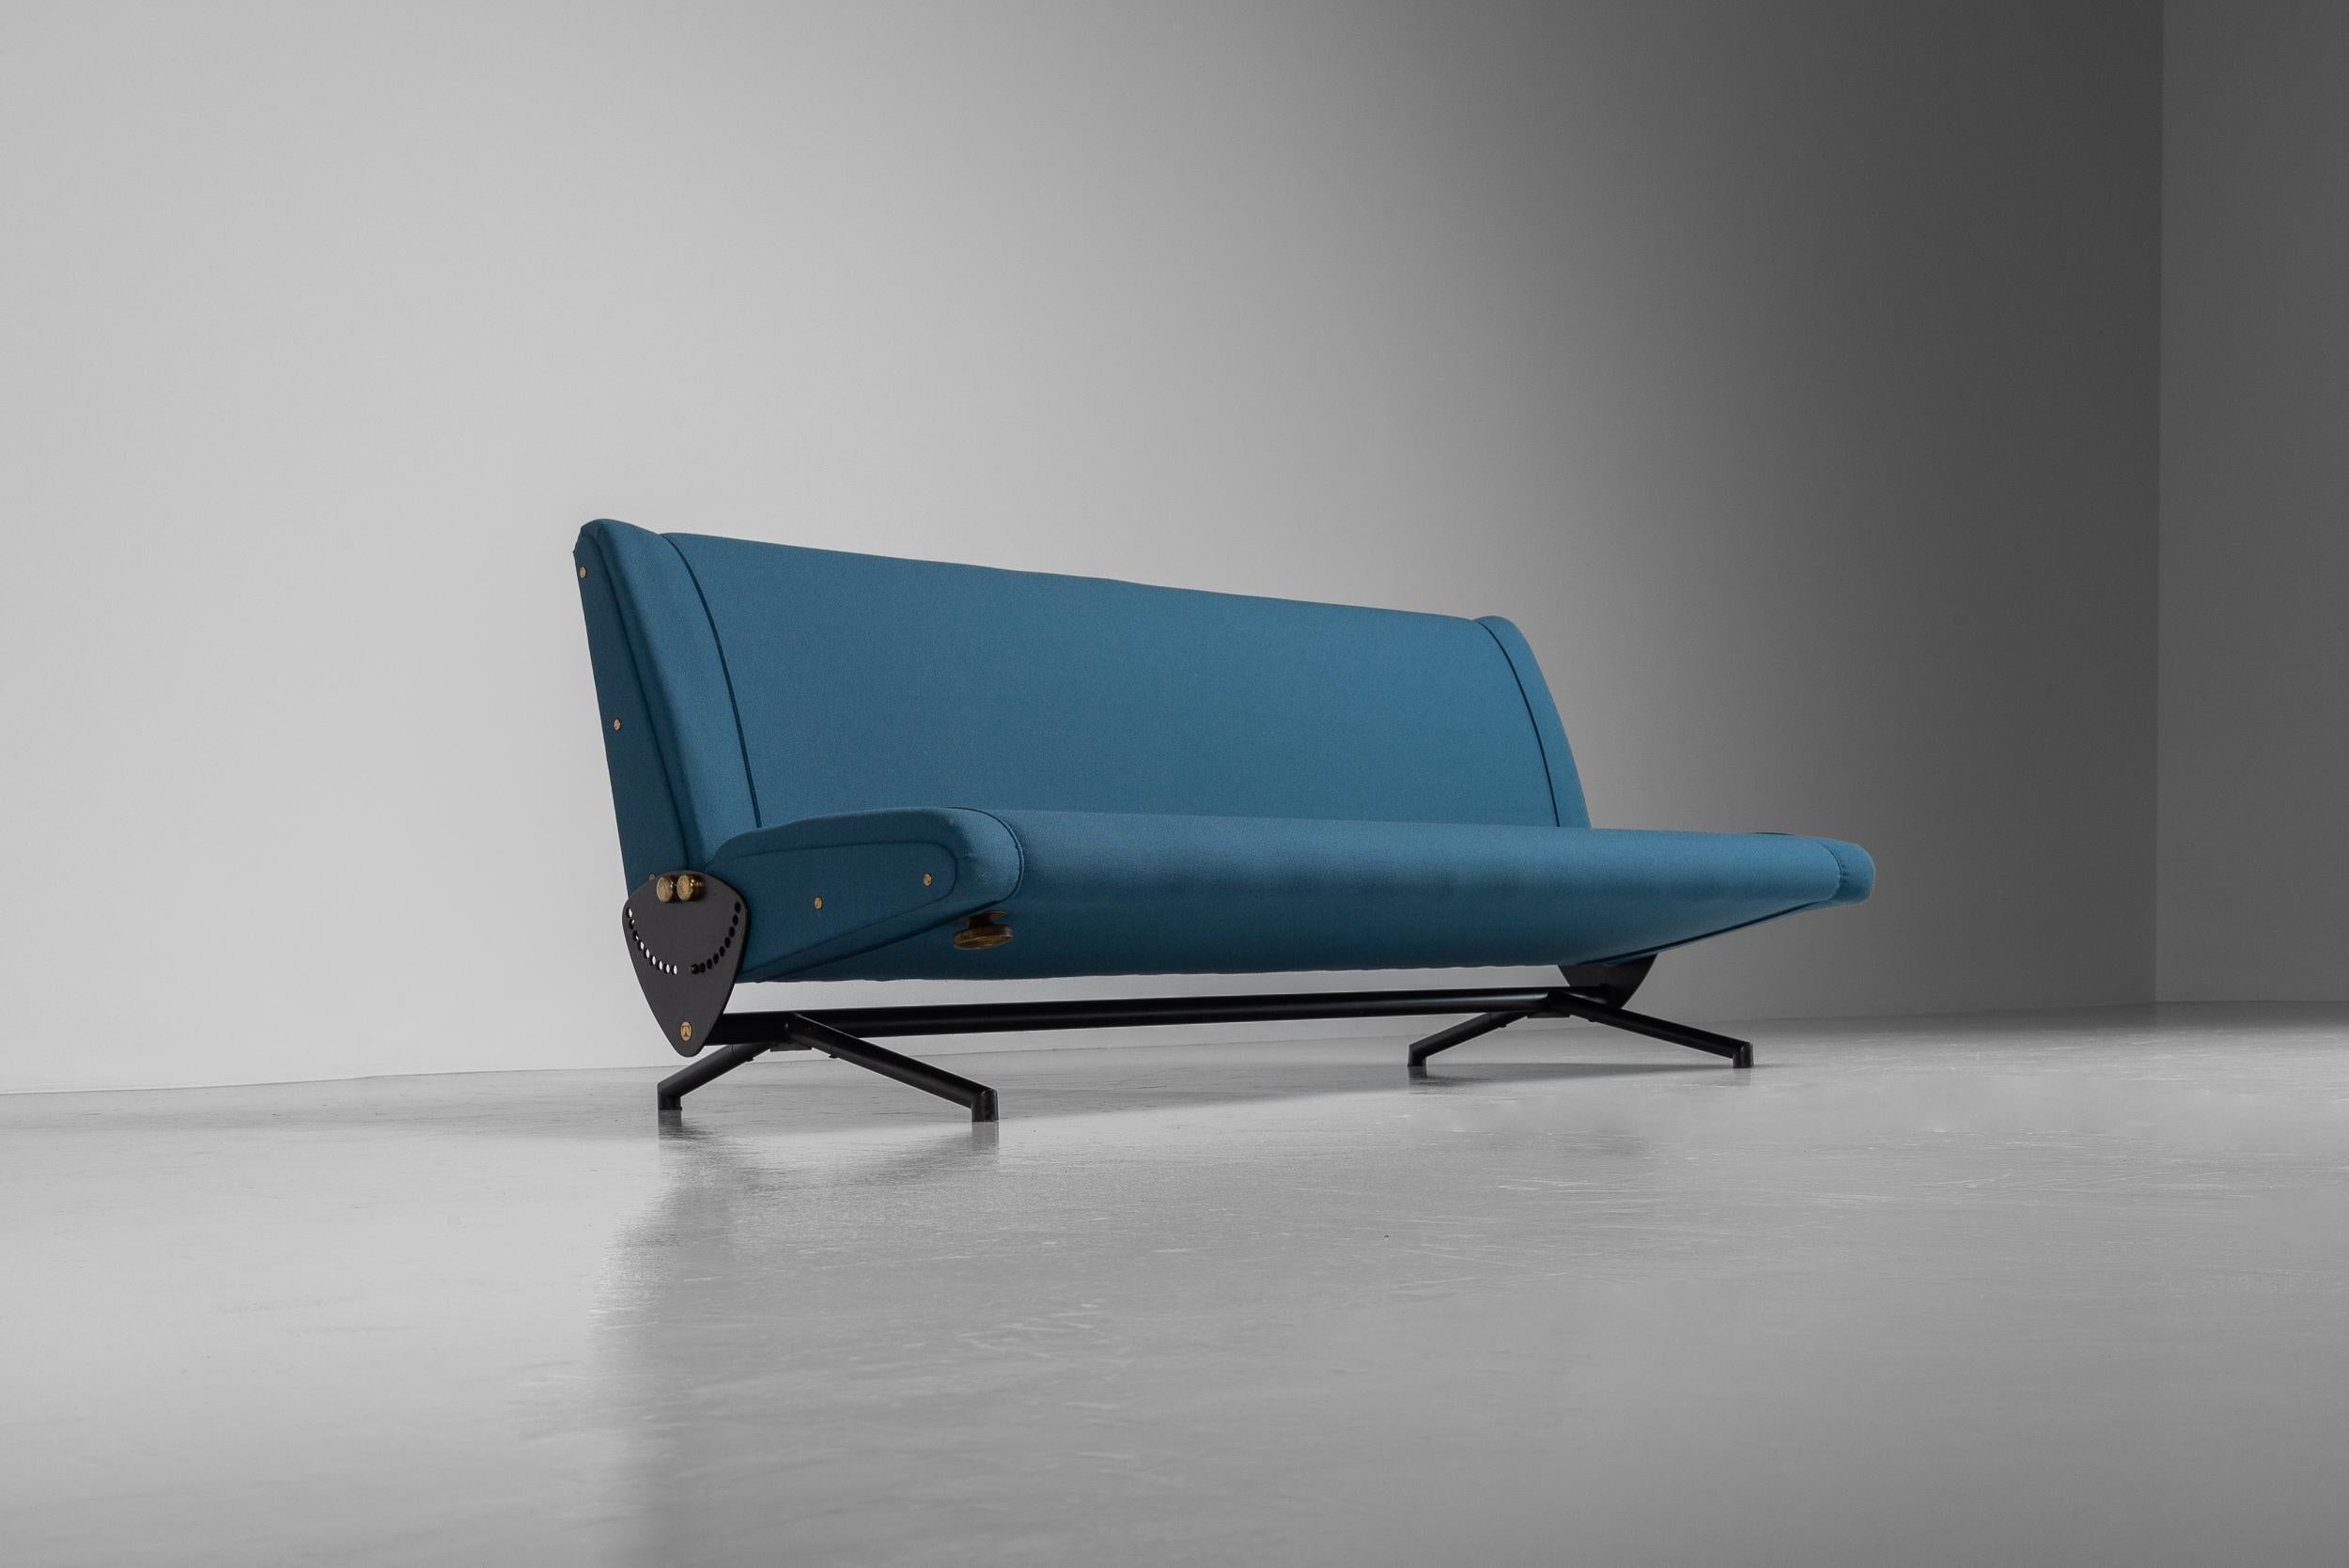 Schönes Tagesbett/Sofa D70, entworfen von Osvaldo Borsani D70 und hergestellt von Tecno in Italien im Jahr 1954. Dieses bequeme Daybed/Sofa ist wirklich einzigartig. Das Besondere ist der spezielle Mechanismus, mit dem sich der Winkel zwischen Sitz